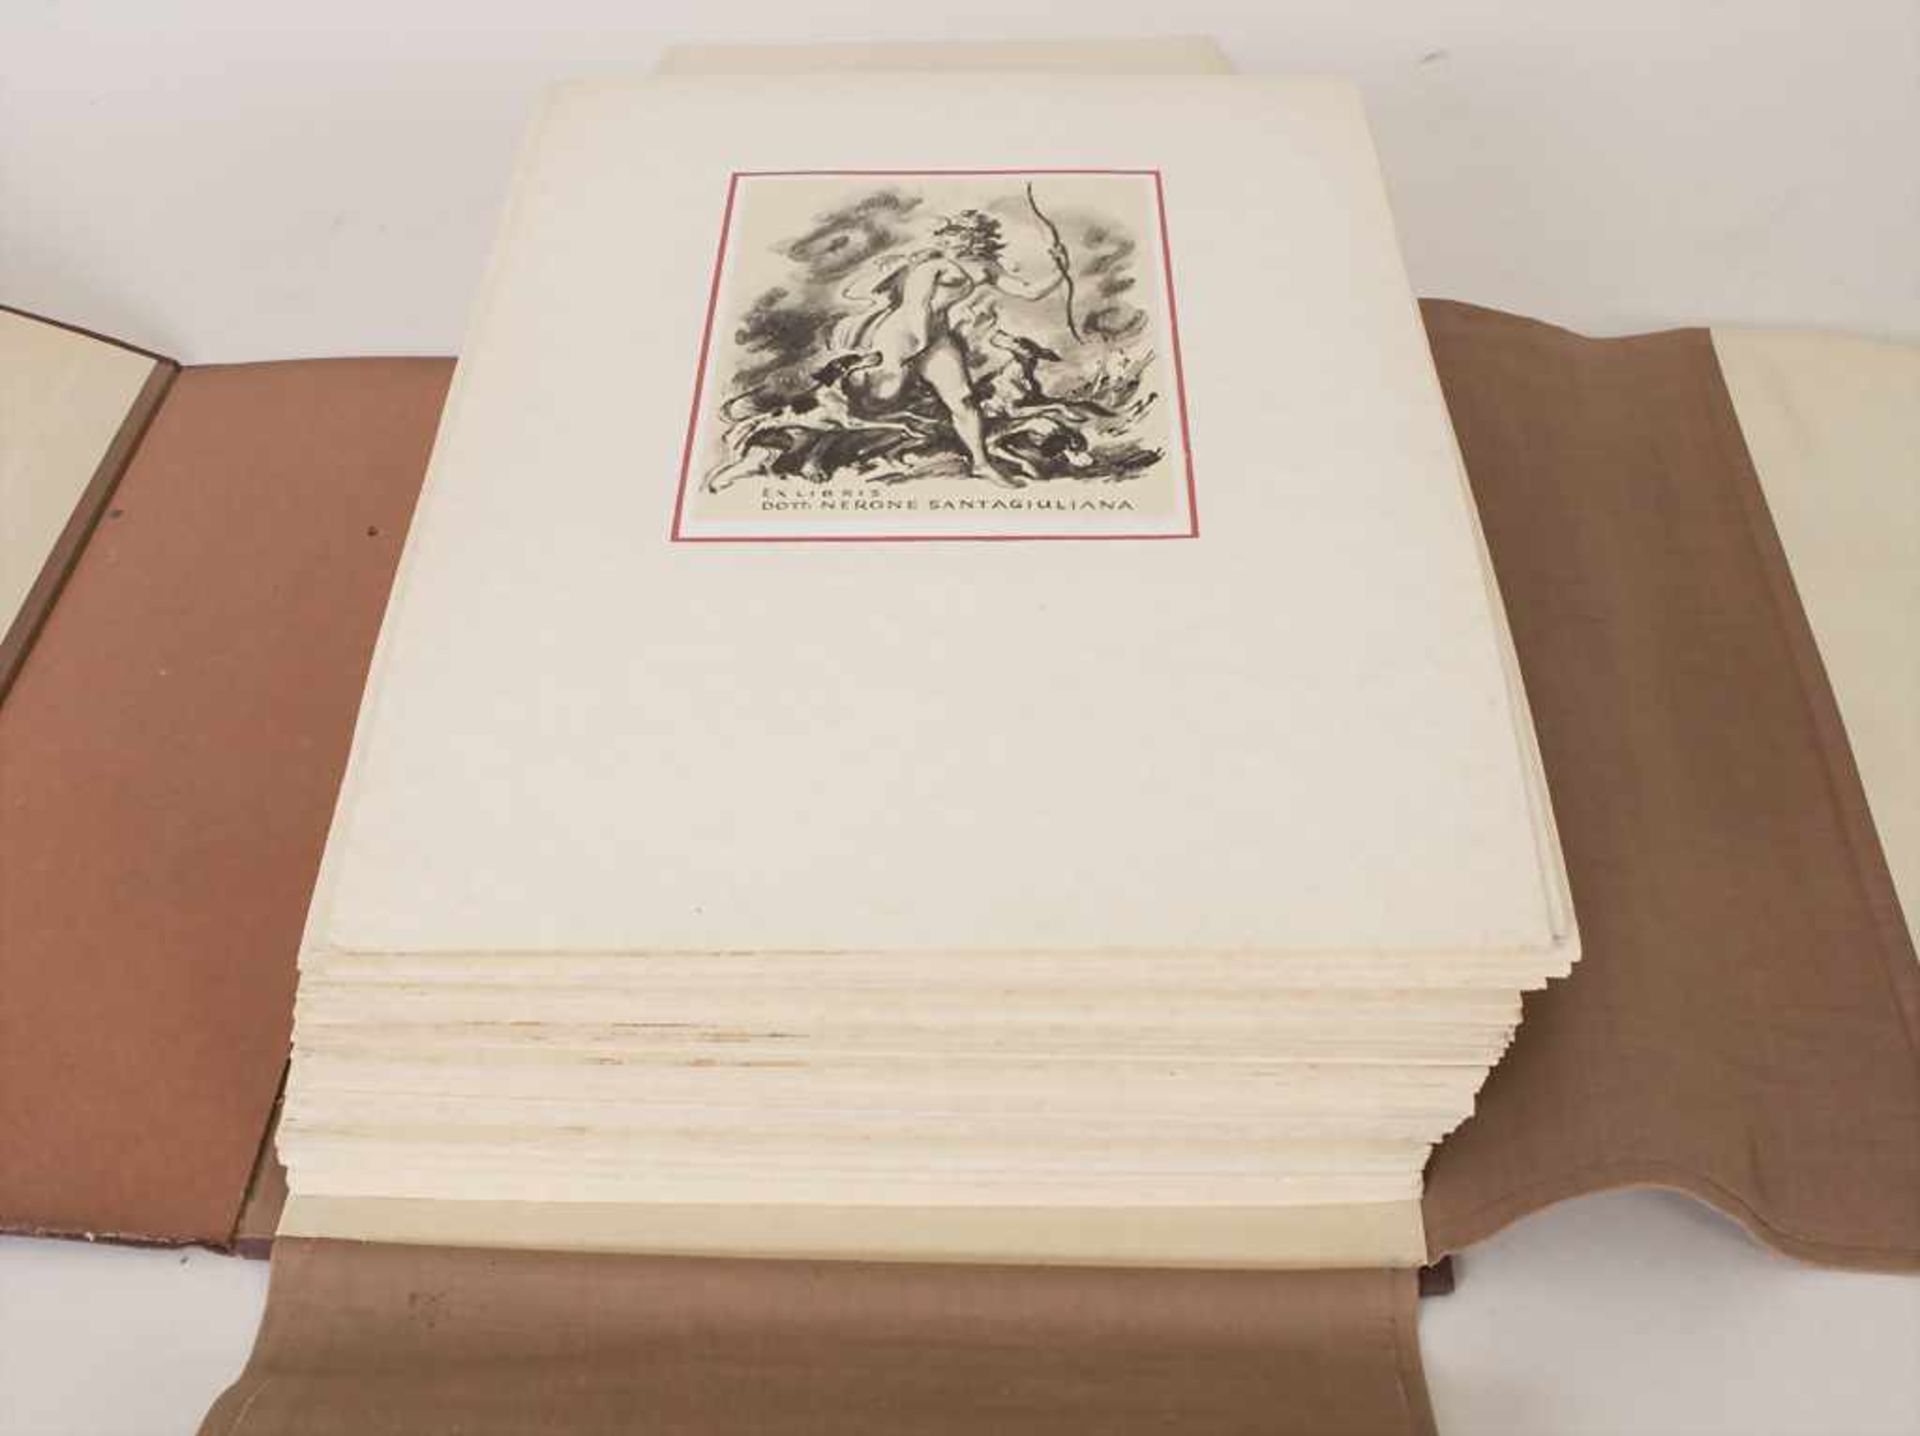 Sammlung ca. 90 Exlibris / A collection of ca. 90 Exlibris, Tschechien, 1960er JahreDarunter die